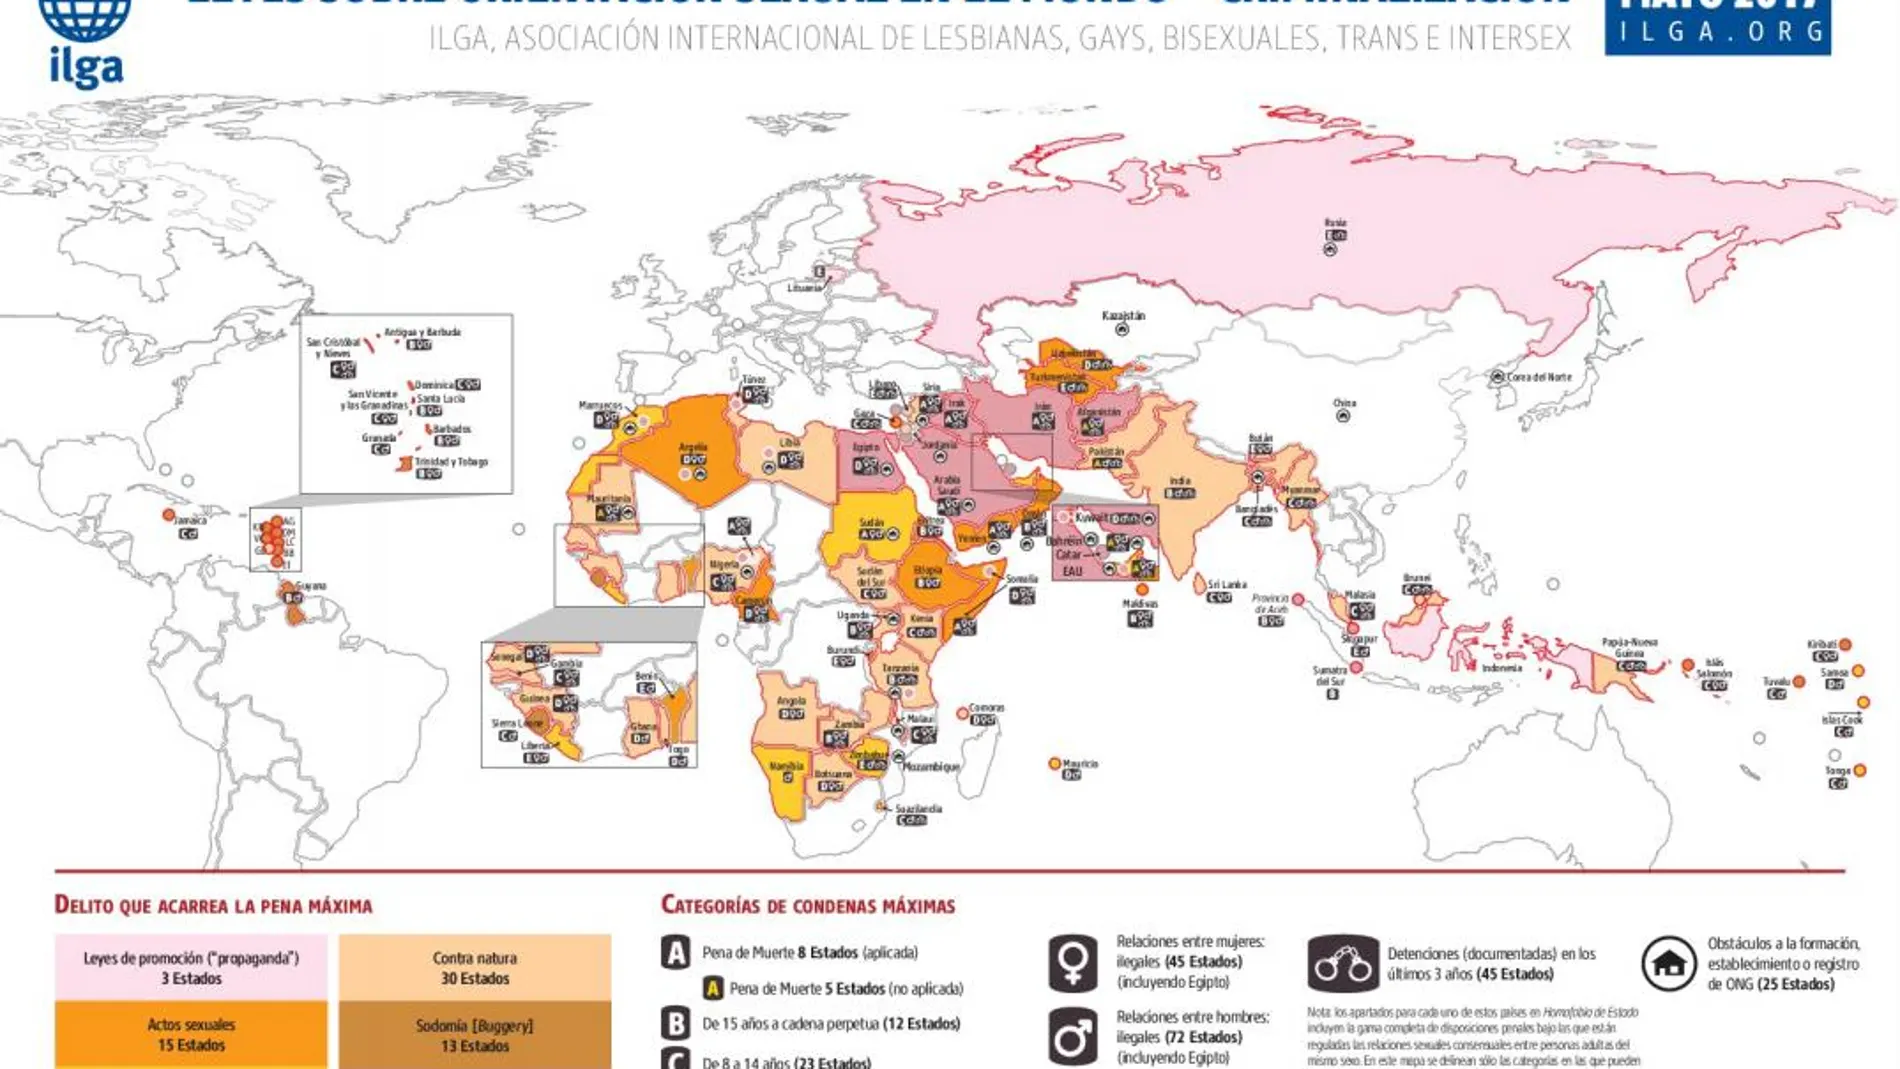 Ser homosexual es delito en 72 países